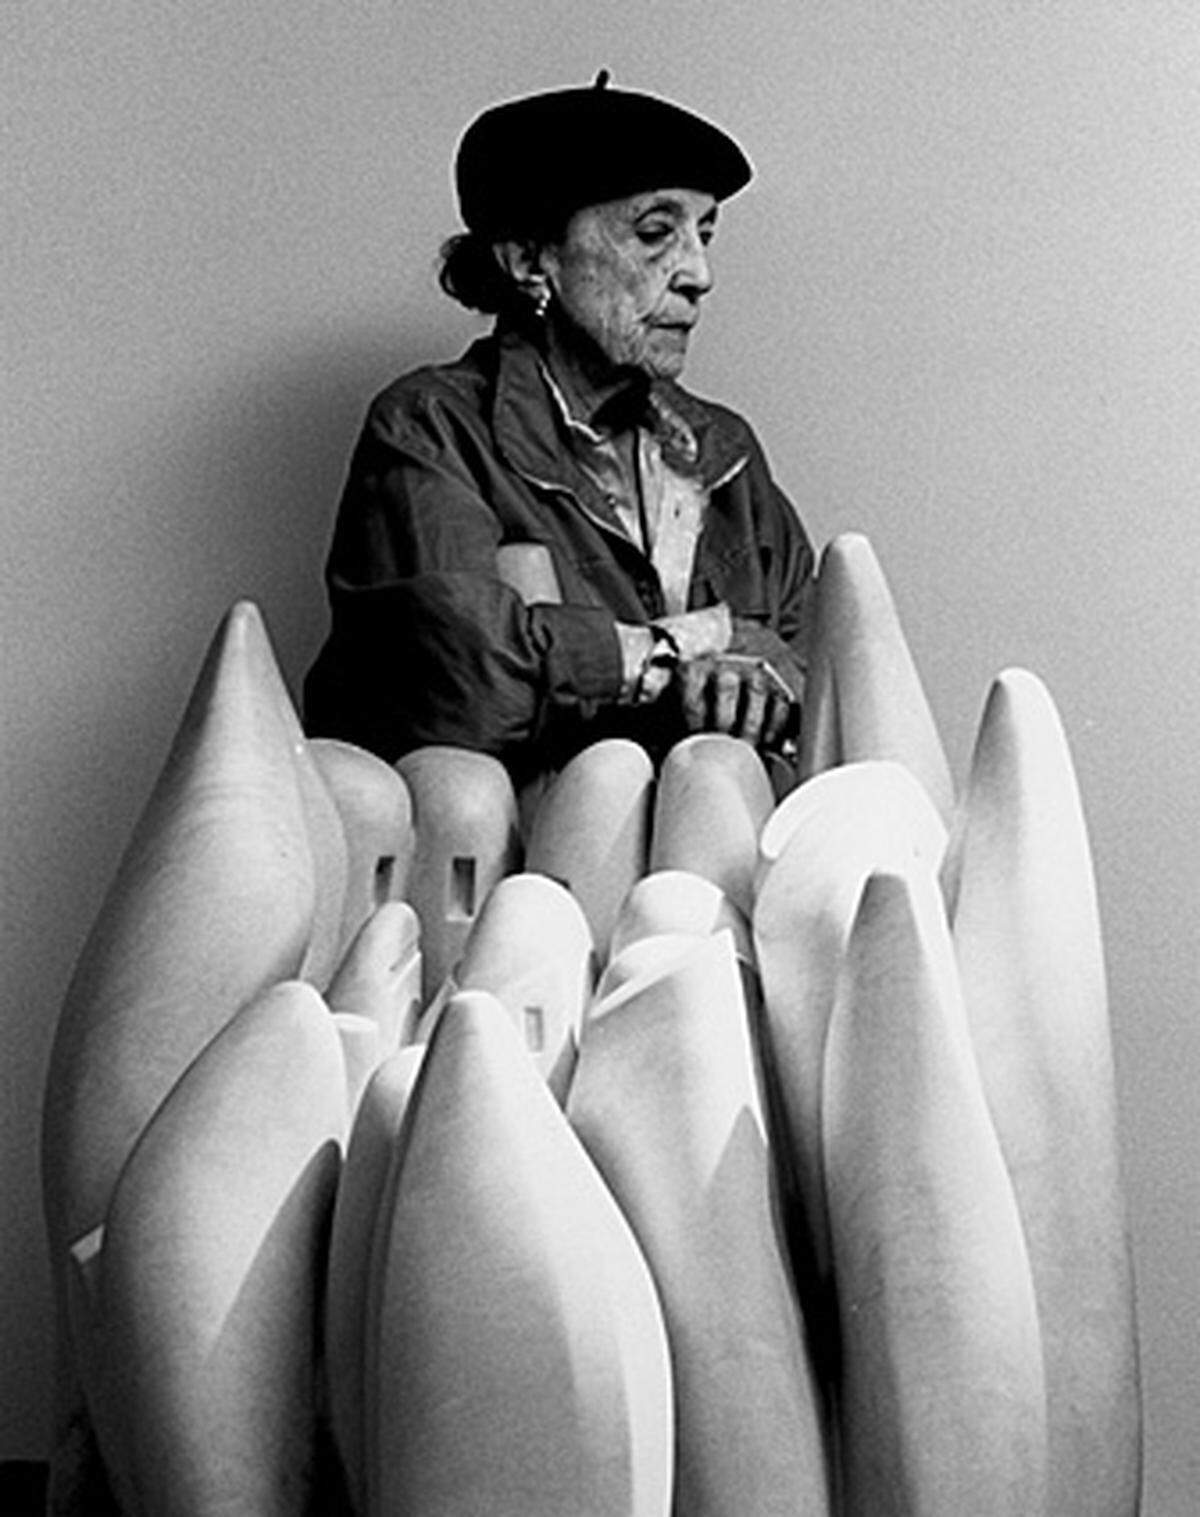 Die fanzösische Bildhauerin Louise Bourgeois ist am Montag in New York 98-jährig an einem Herzinfarkt gestorben.  Am 25. Dezember 1911 in Paris geboren und in den 30er Jahren nach New York ausgewandert, galt Bourgeois als "Grand Dame der Gegenwartskunst" und teuerste Künstlerin der Gegenwart.